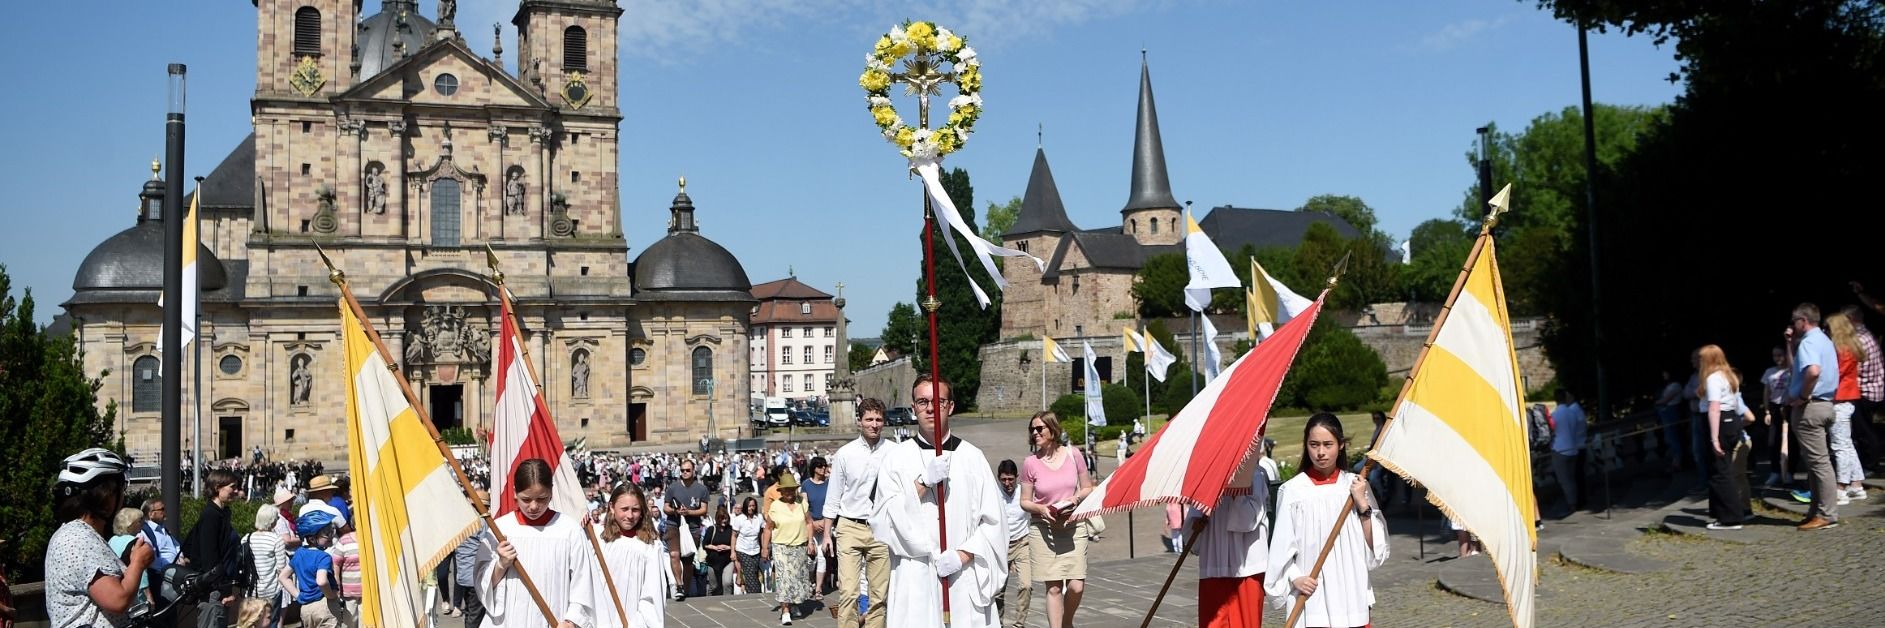 Fronleichnam: Bistum Fulda zeigt Film zu Bedeutung und Atmosphäre